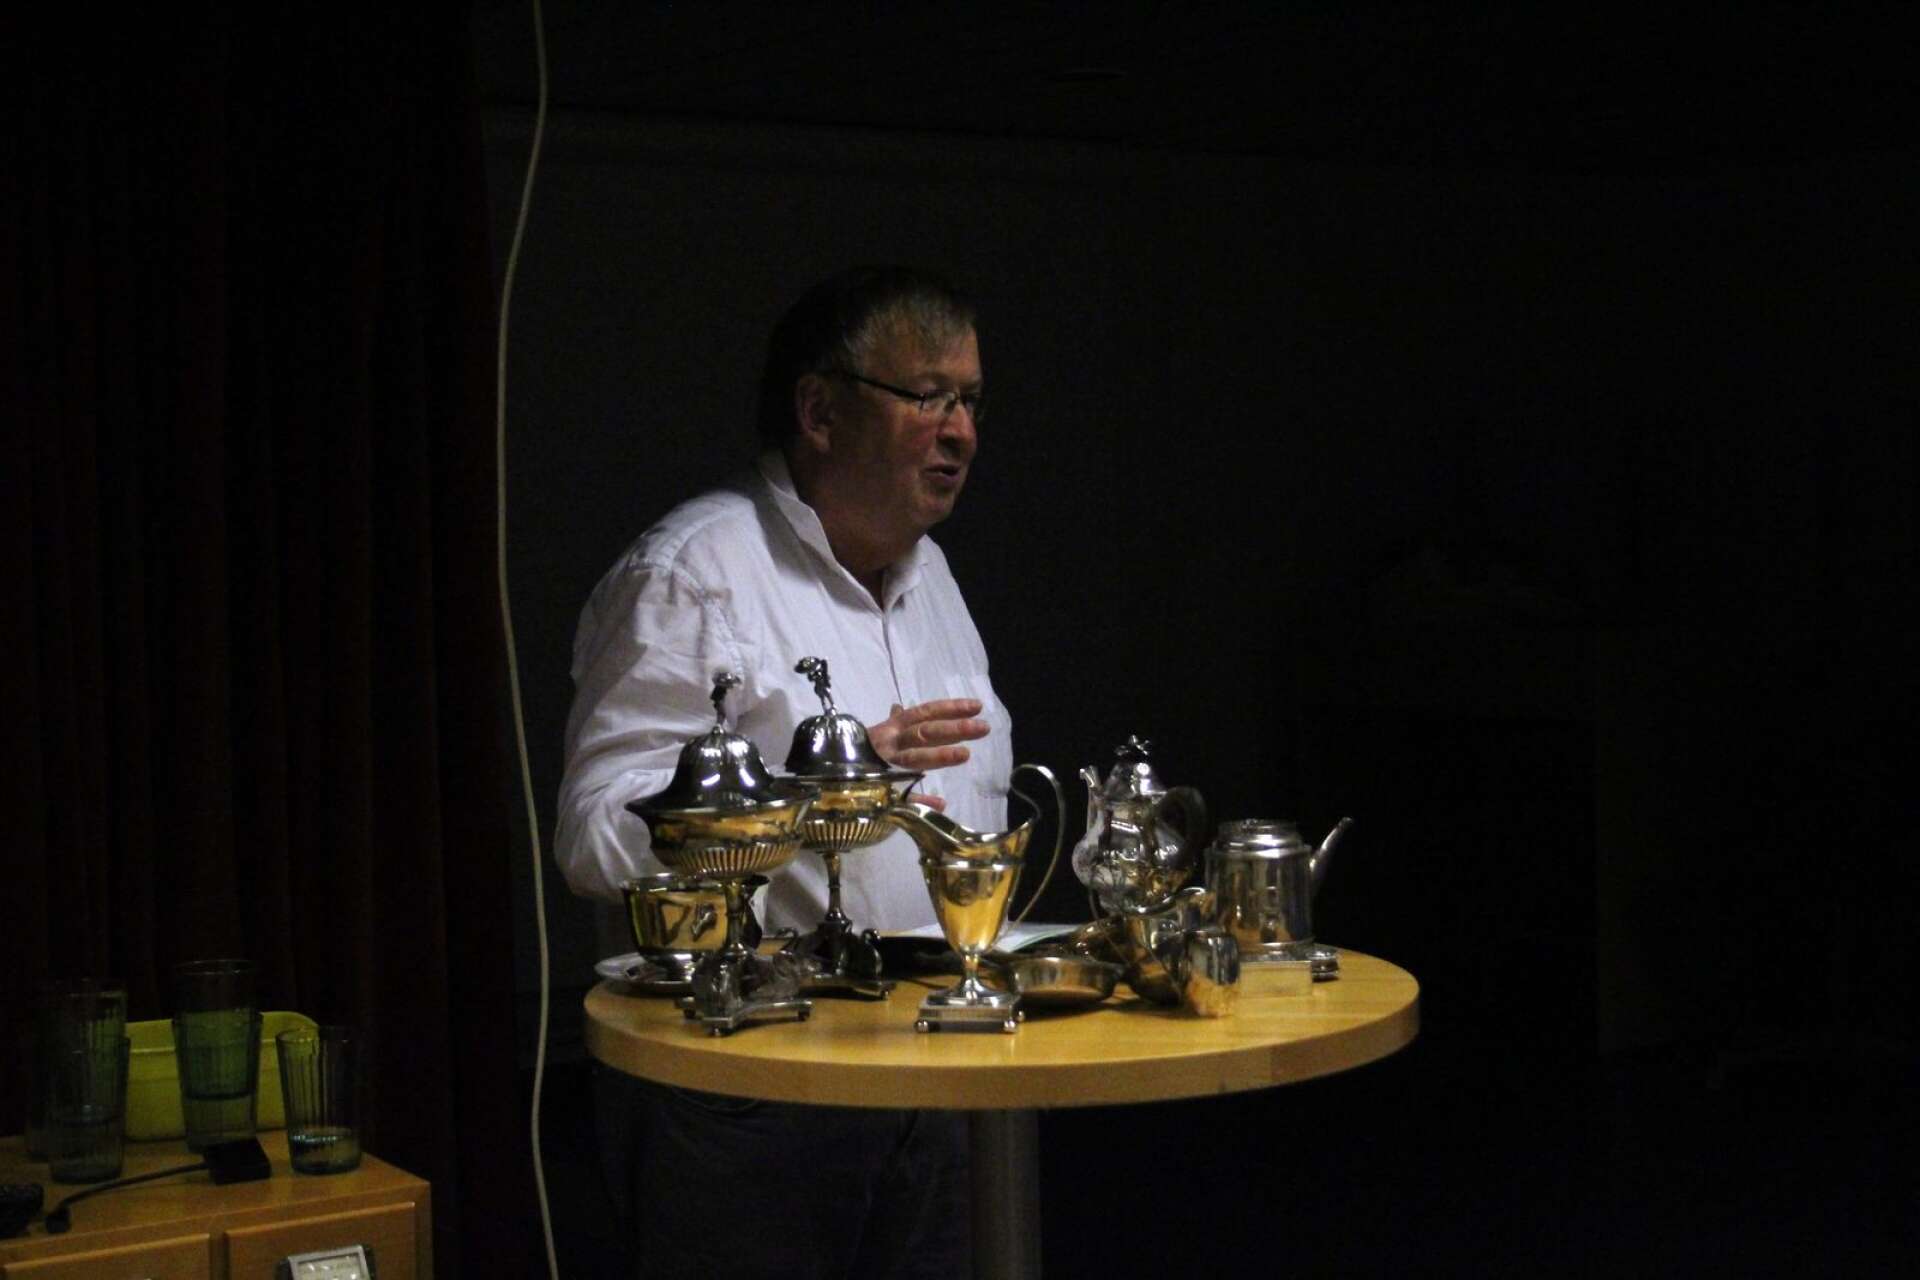 Antikexperten Sten Torstensson inte bara berättade om silverskatter utan lät också publiken få känna på de snusdosor, begravningsskedar, chokladkannor, soppslevar, raguskedar och sockerströare han hade tagit med sig. 



   